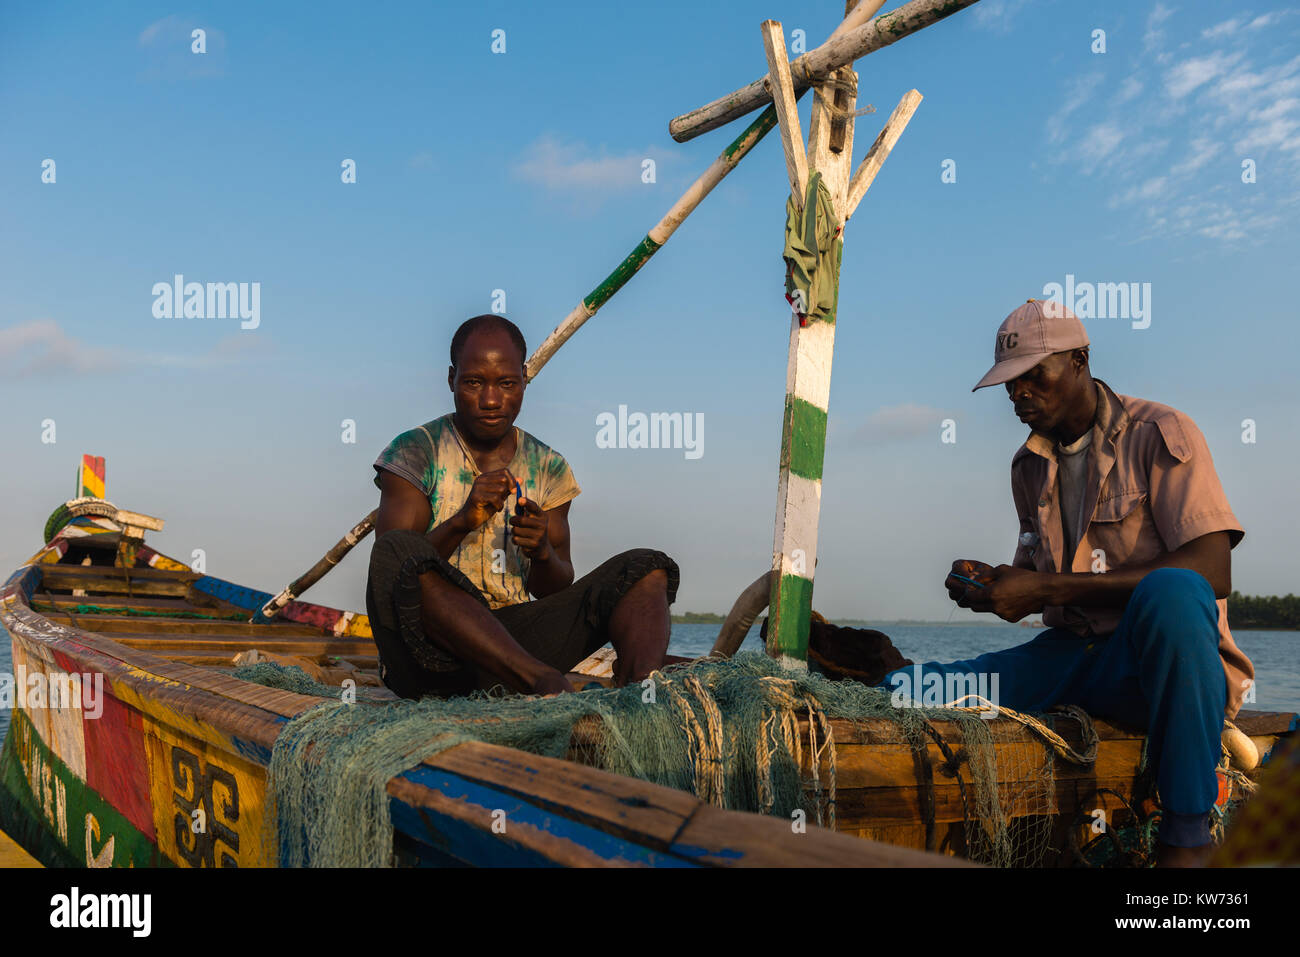 Fisherman riparare reti, seduto nella sua barca open, Volta River, Ada Foah, maggiore Regione di Accra, Ghana, Africa Foto Stock